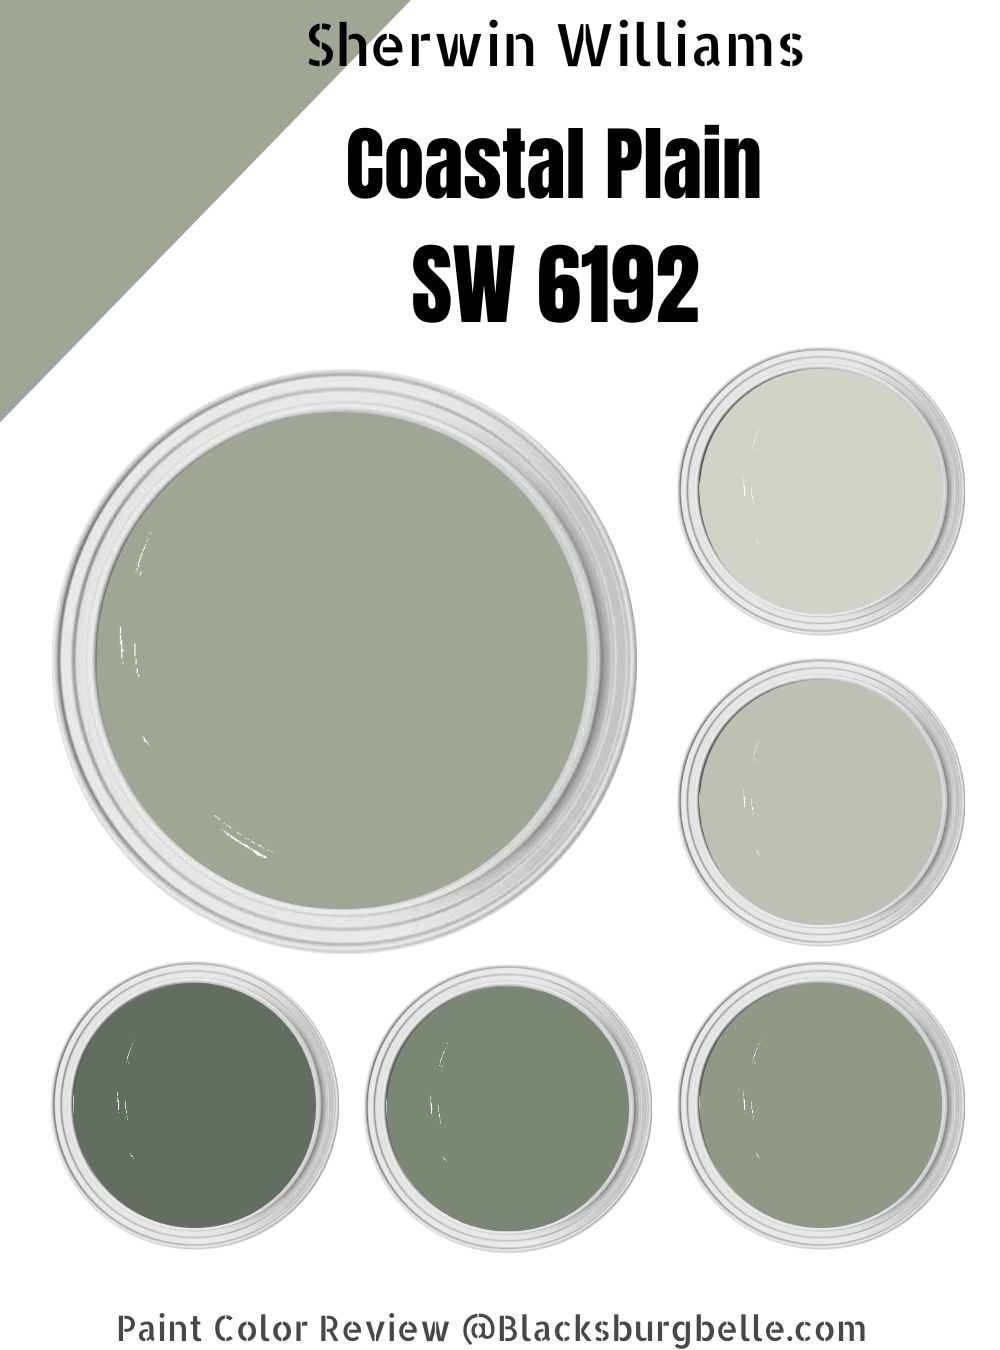 Sherwin Williams Coastal Plain (SW 6192) Paint Color Review